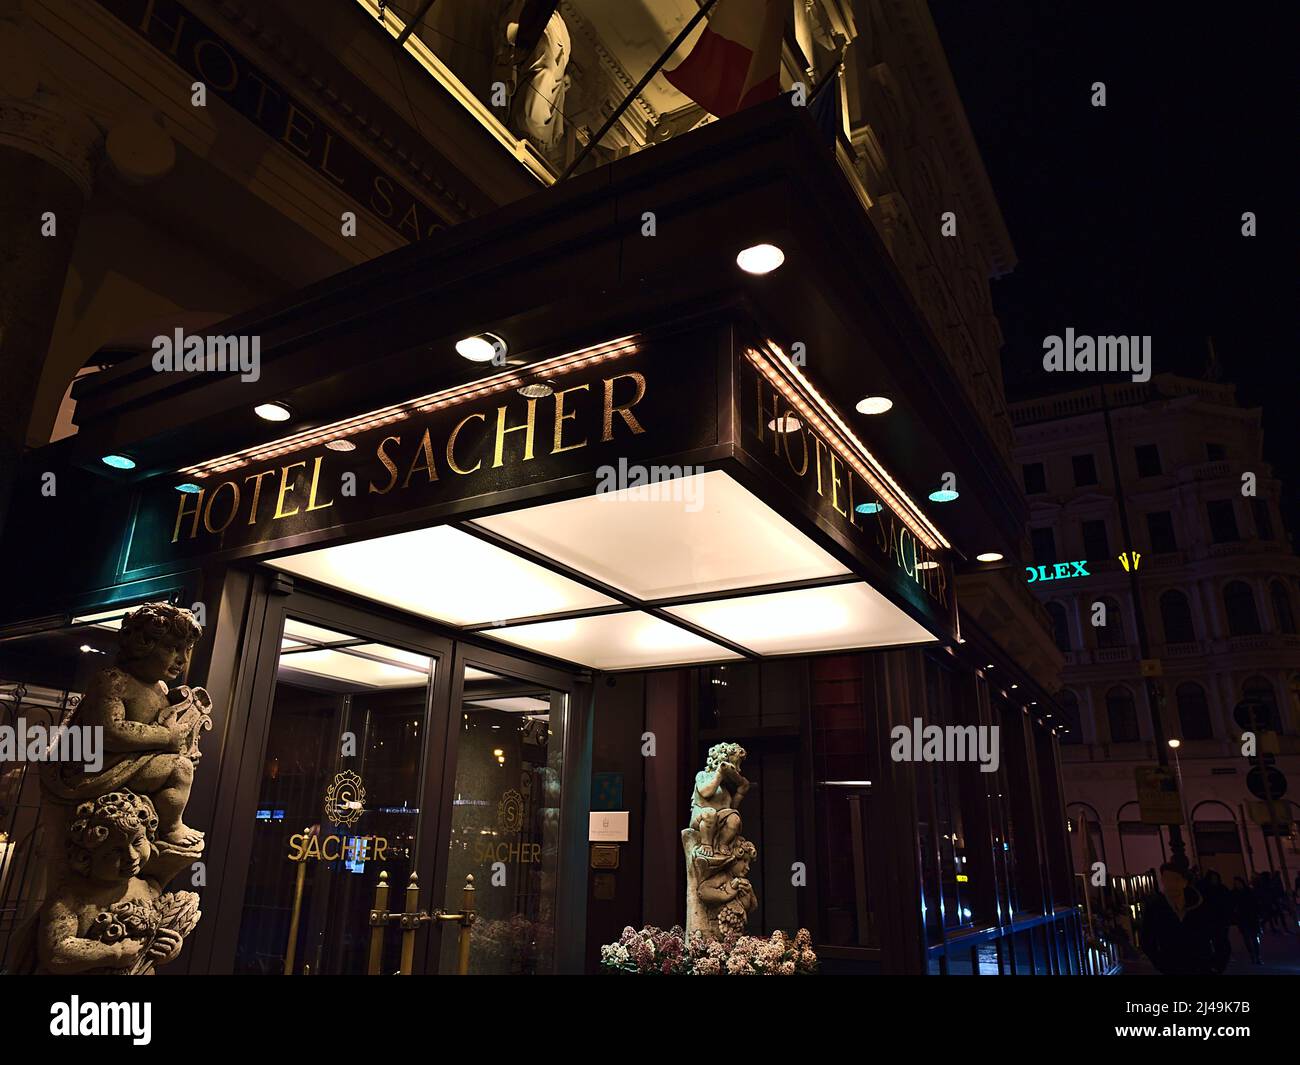 Vista dell'ingresso dell'edificio del famoso alloggio di lusso Hotel Sacher nel centro storico di Vienna, Austria di notte con scritte dorate. Foto Stock